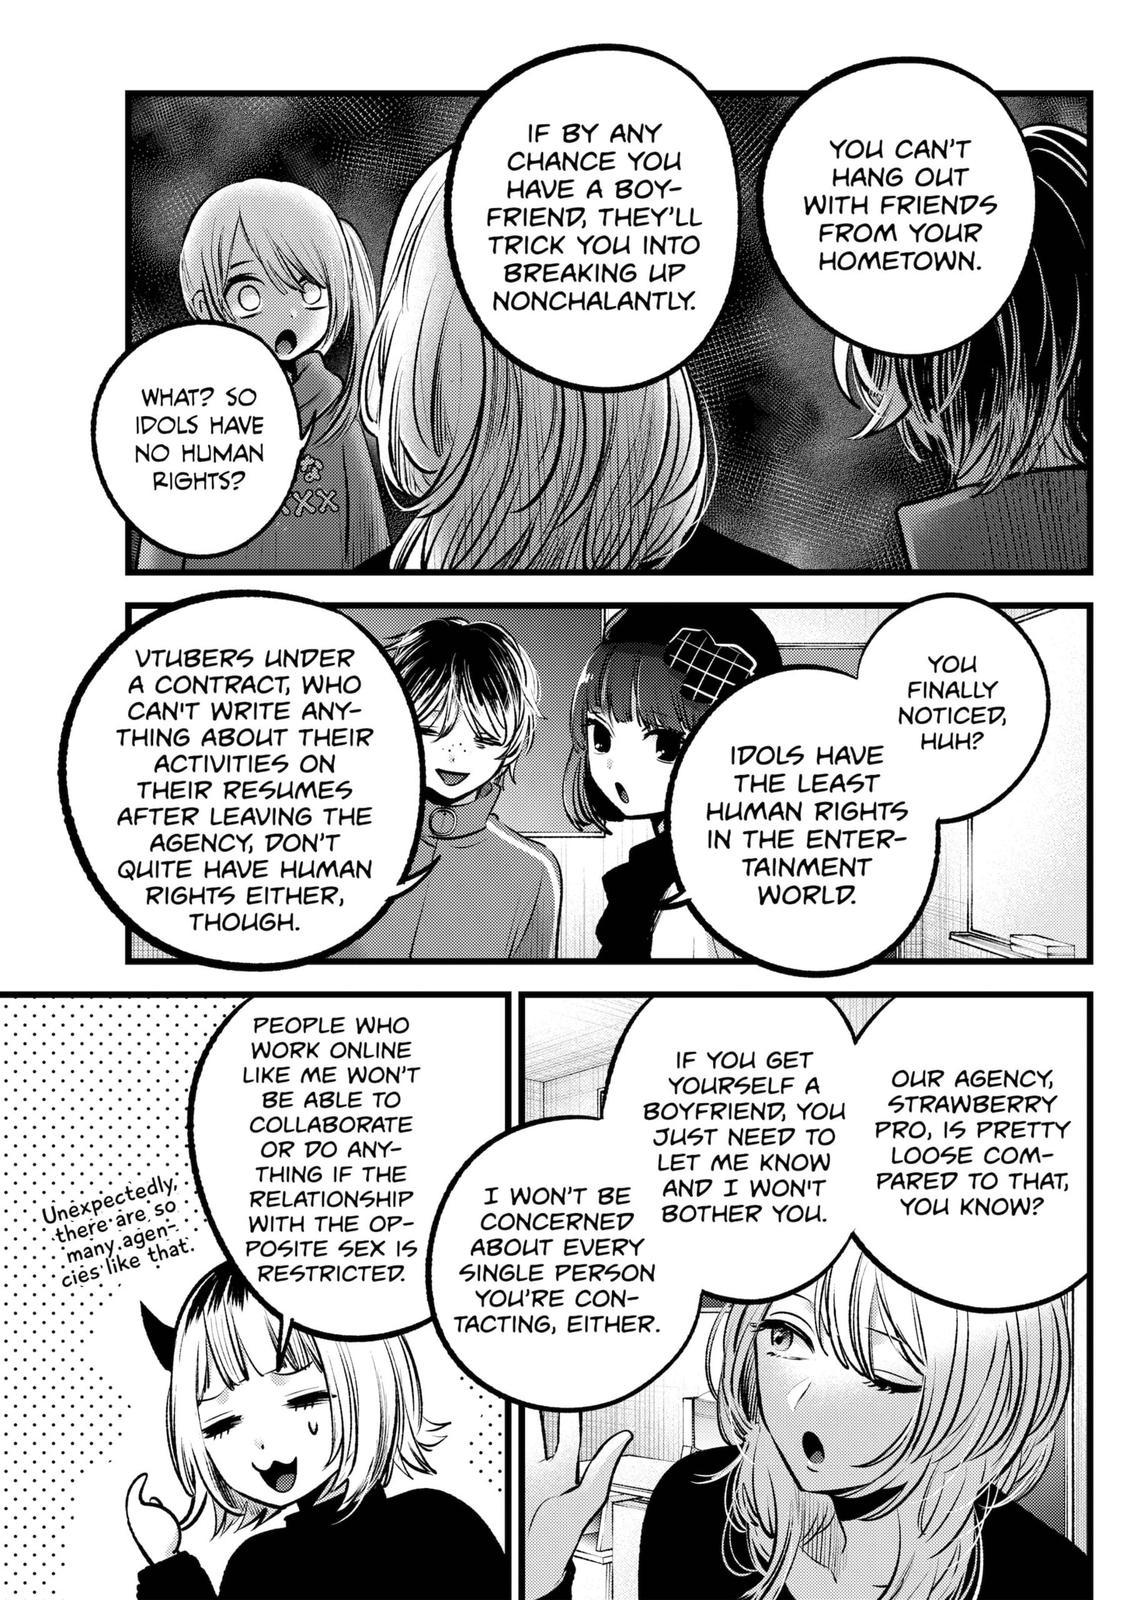 Oshi no Ko, Chapter 100 - Oshi no Ko Manga Online